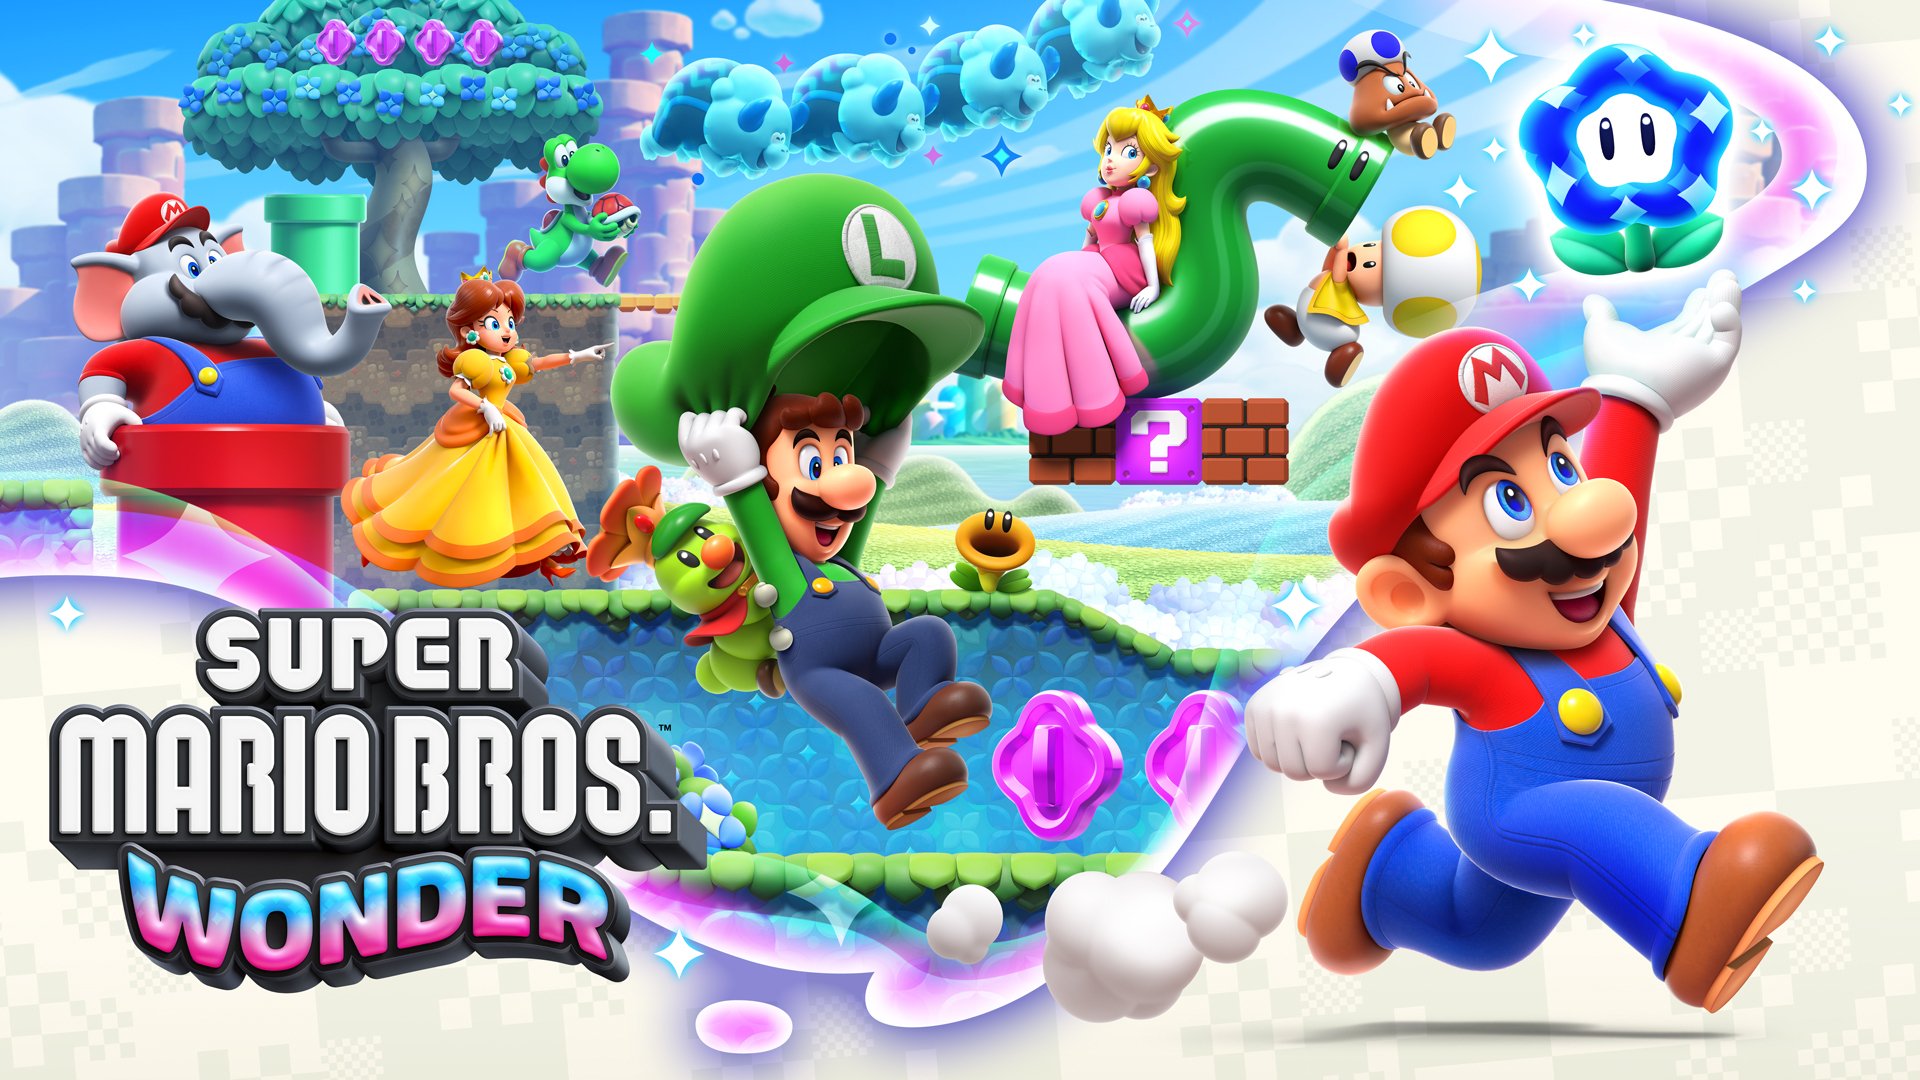 Se acerca una nueva entrega de un videojuego de Nintendo, se trata de Super Mario Bros. Wonder